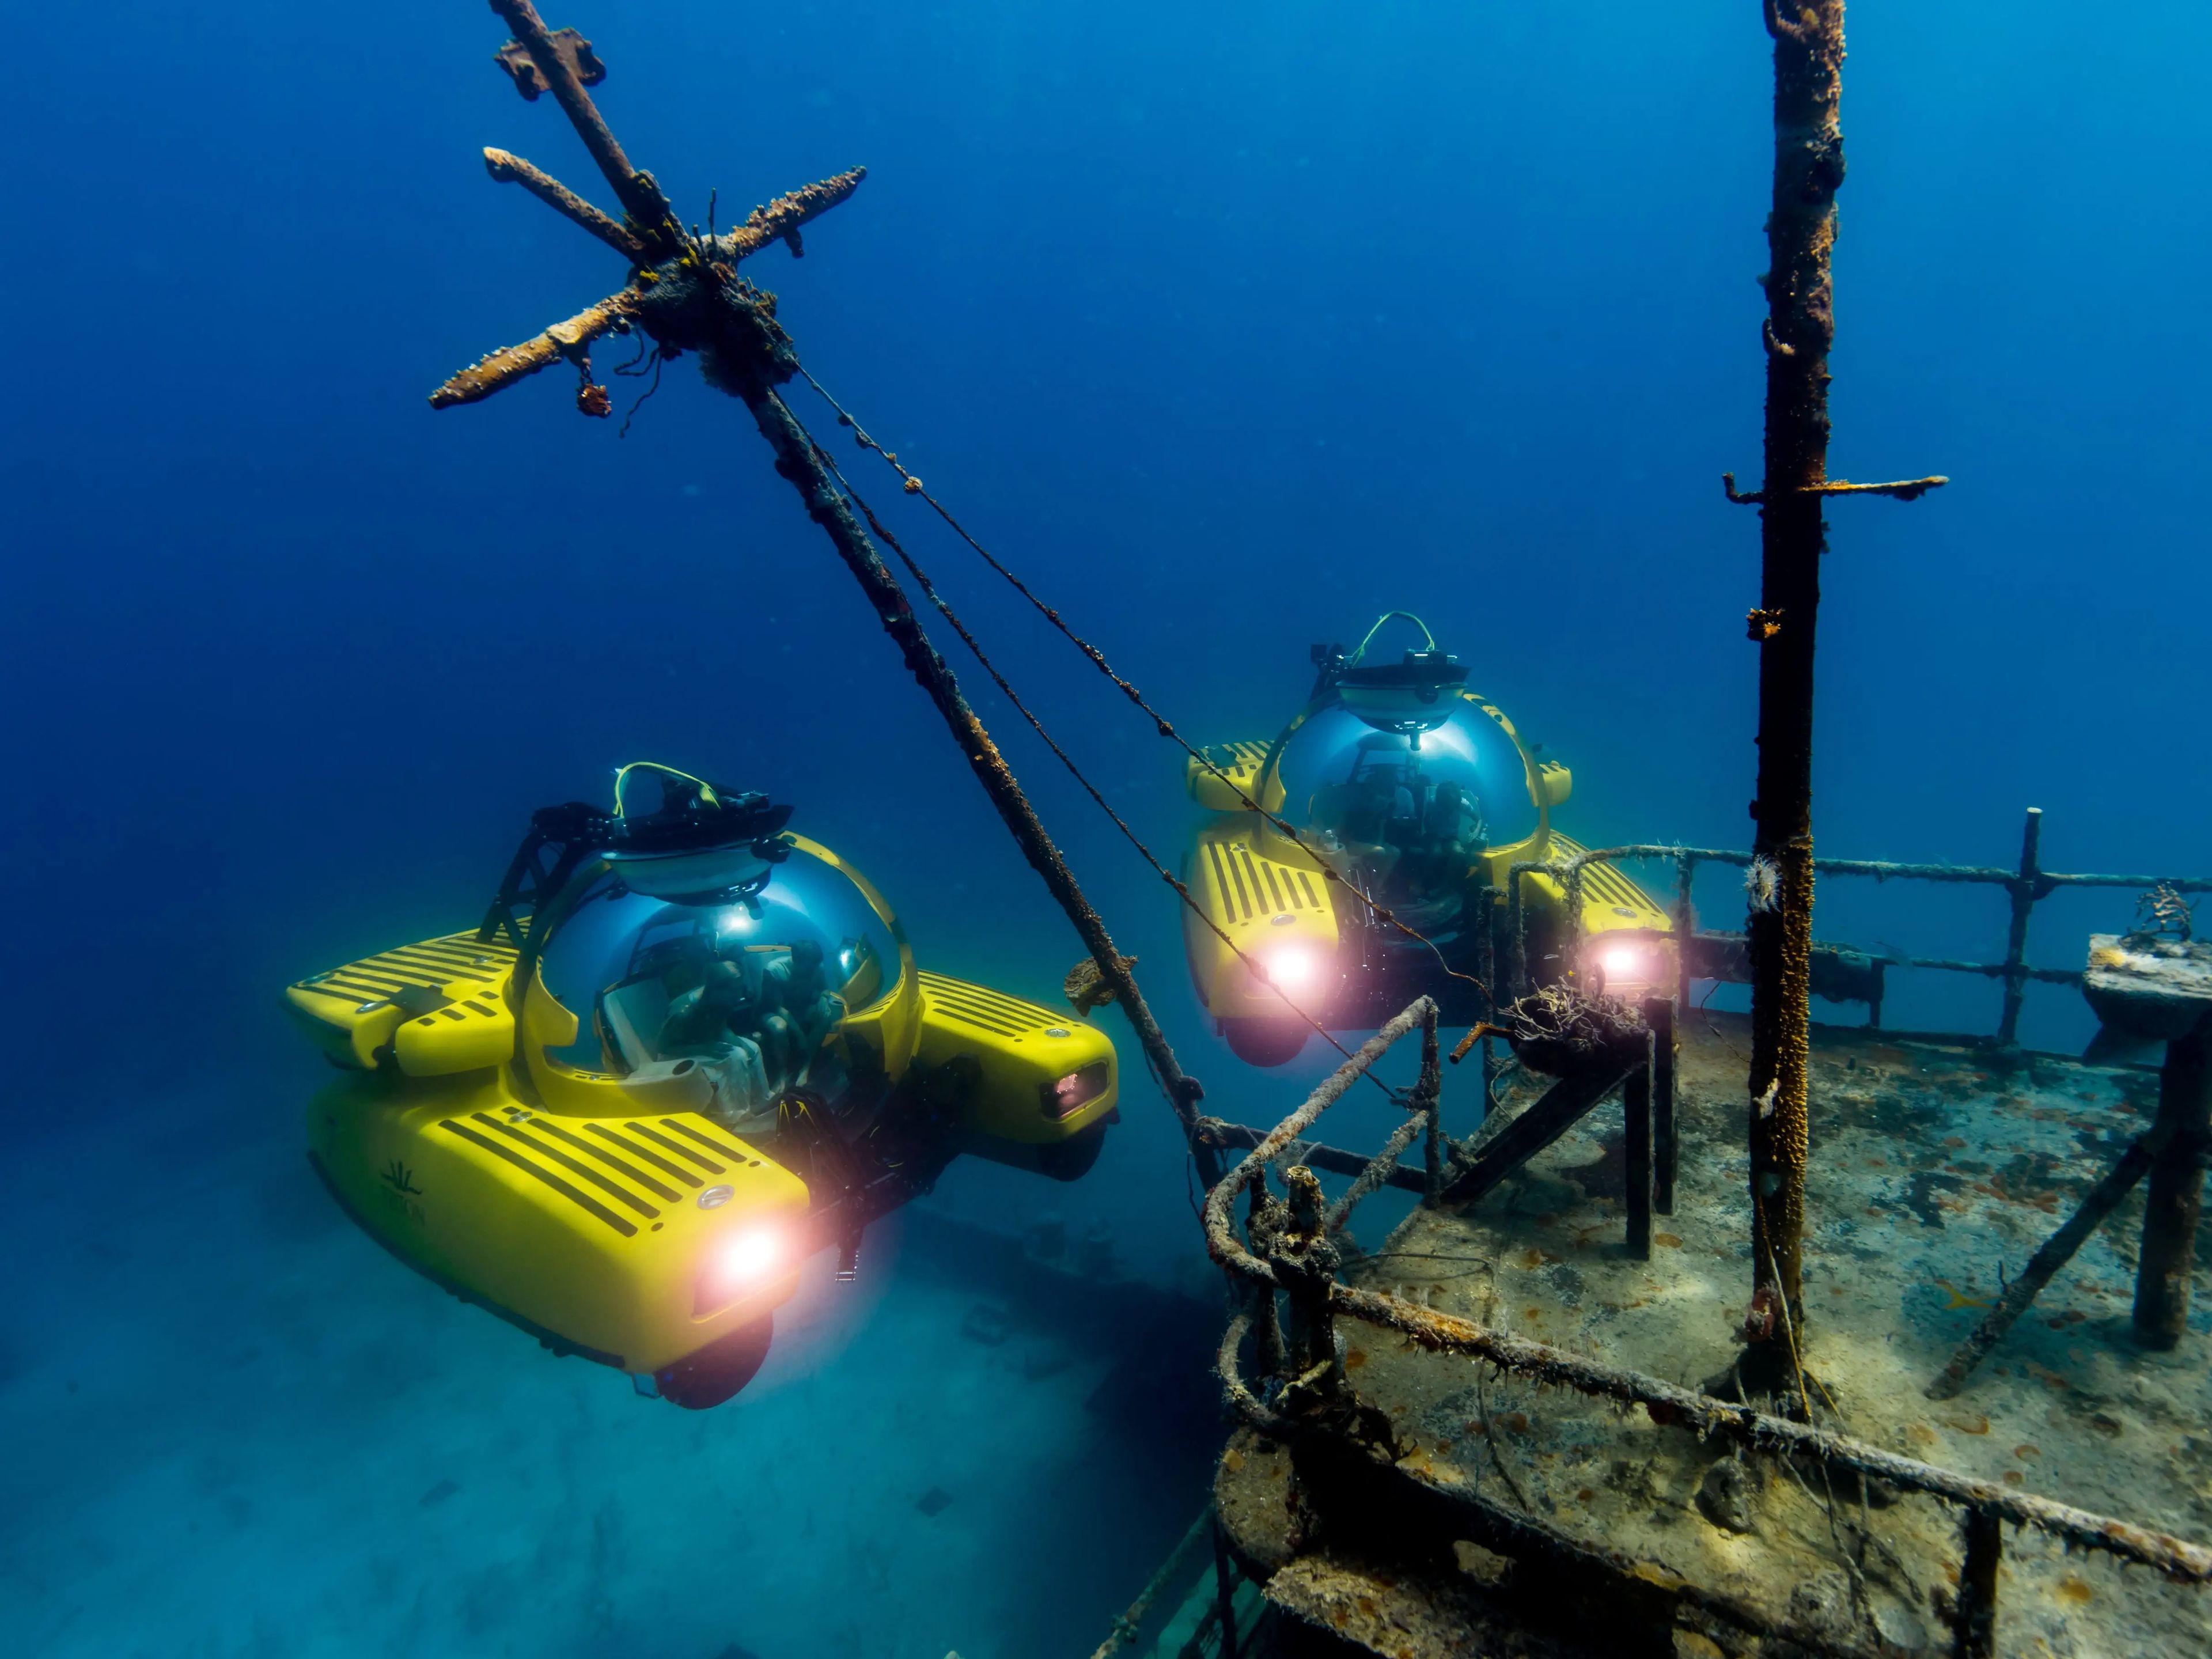 Two Triton Submersibles exploring a ship wreck.